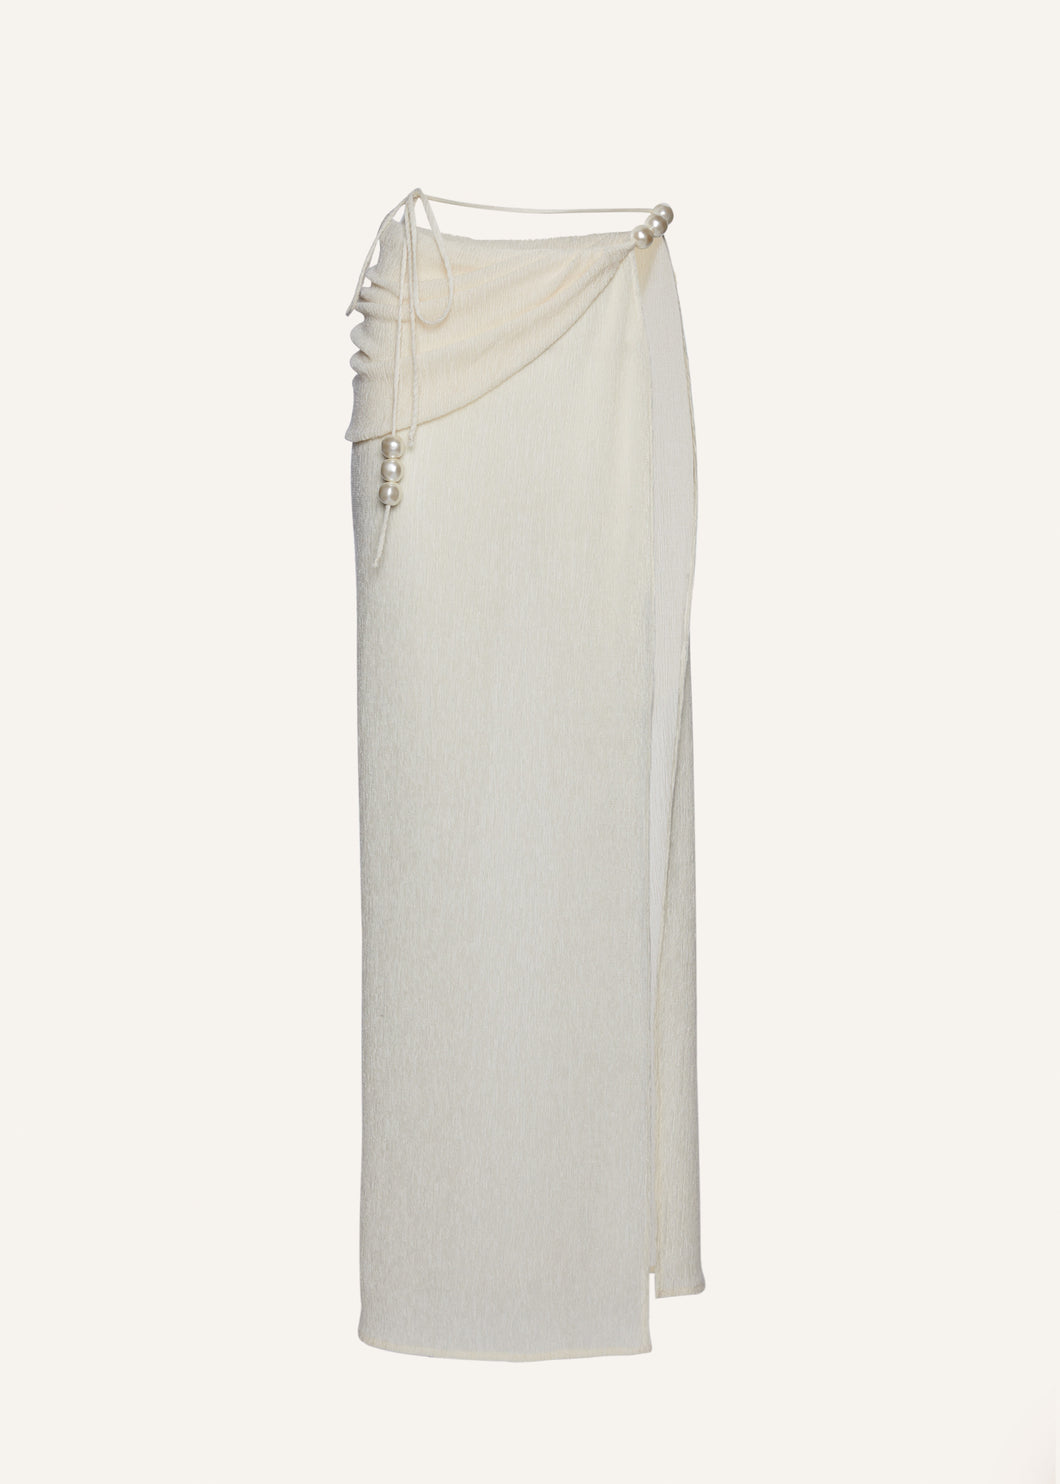 Asymmetrical pearl maxi skirt in cream